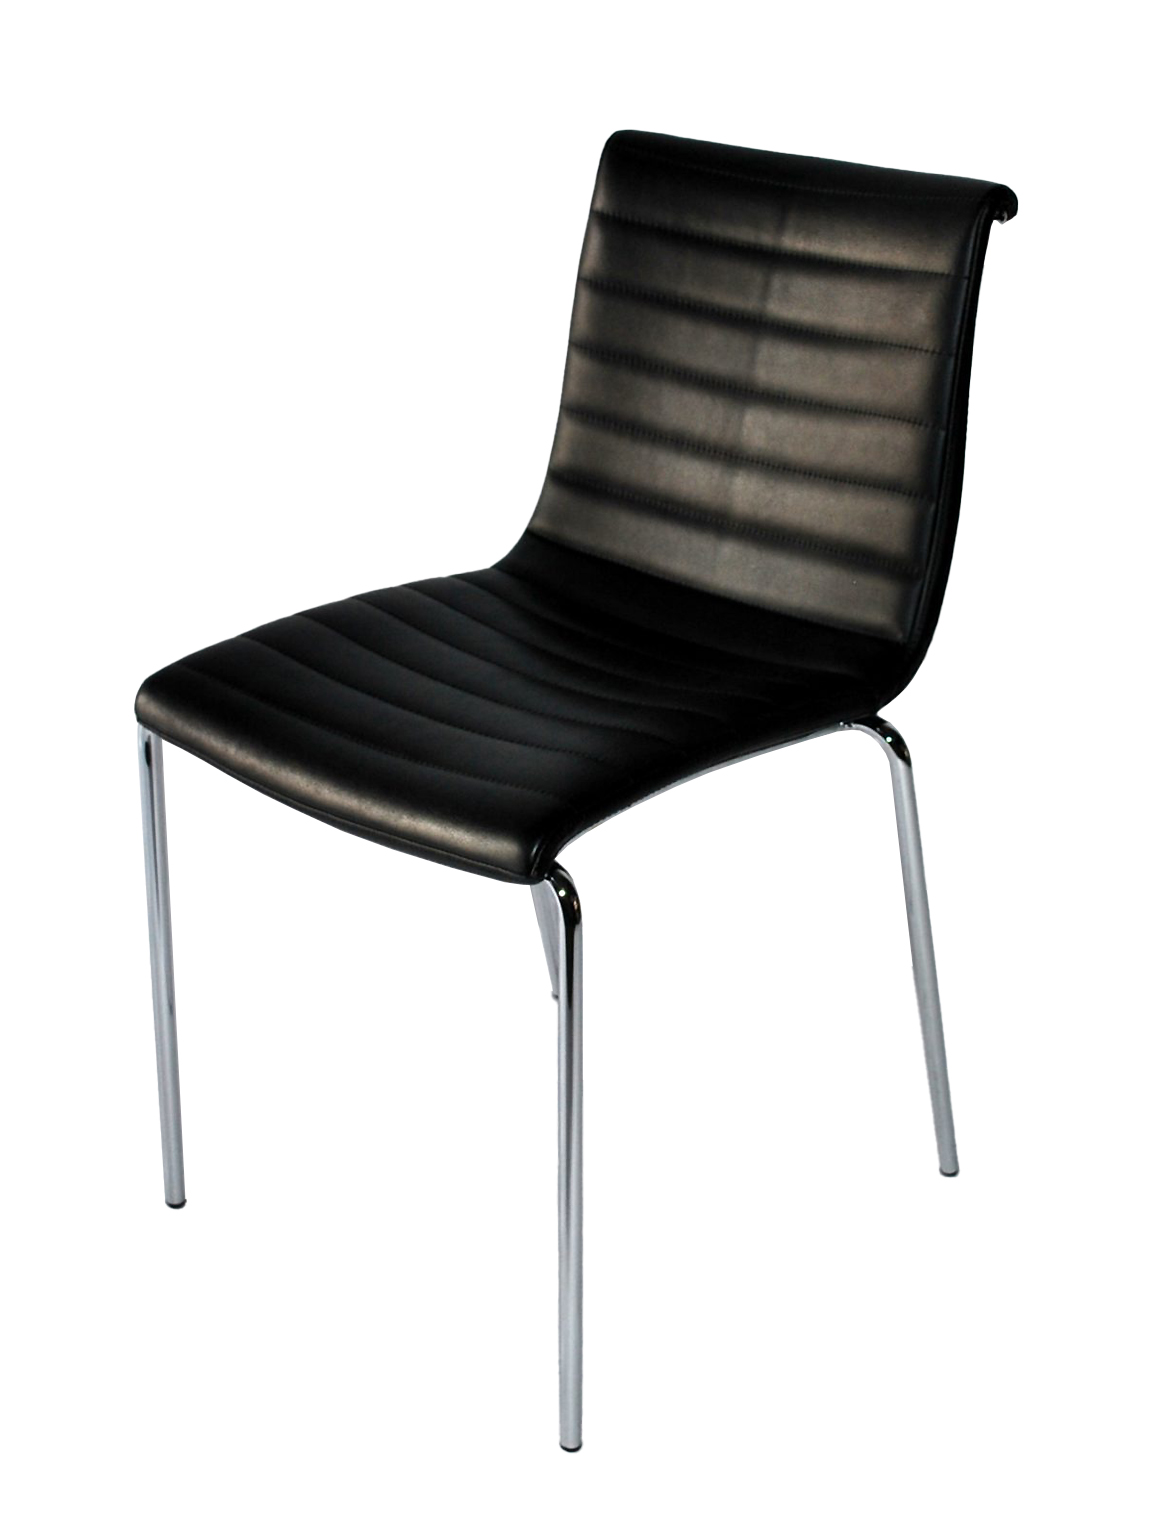 zwart leder stapel stoel afb 1-groot-vert-1152×1536